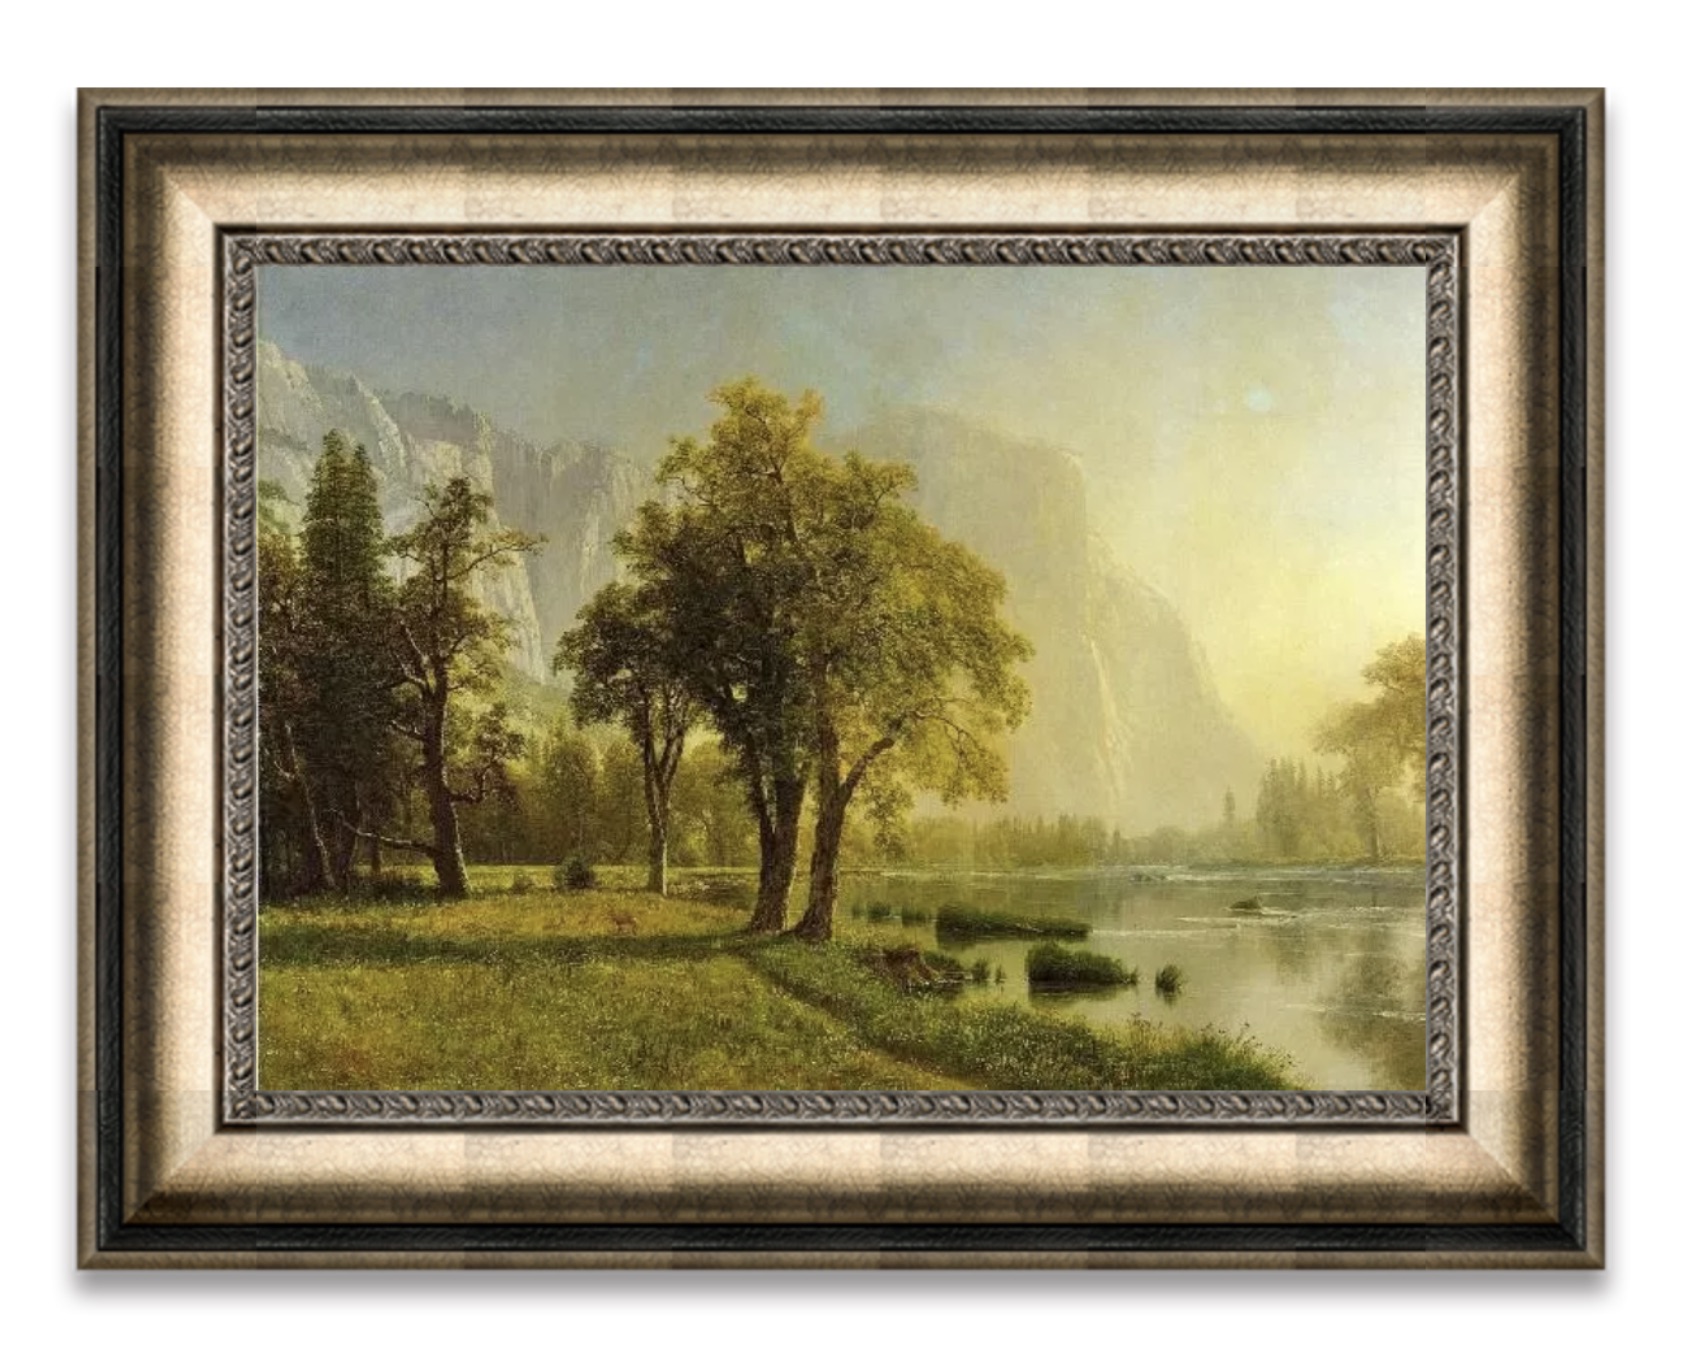 Albert Bierstadt "El Capitan, Yosemite Valley, 1875" Oil Painting, After